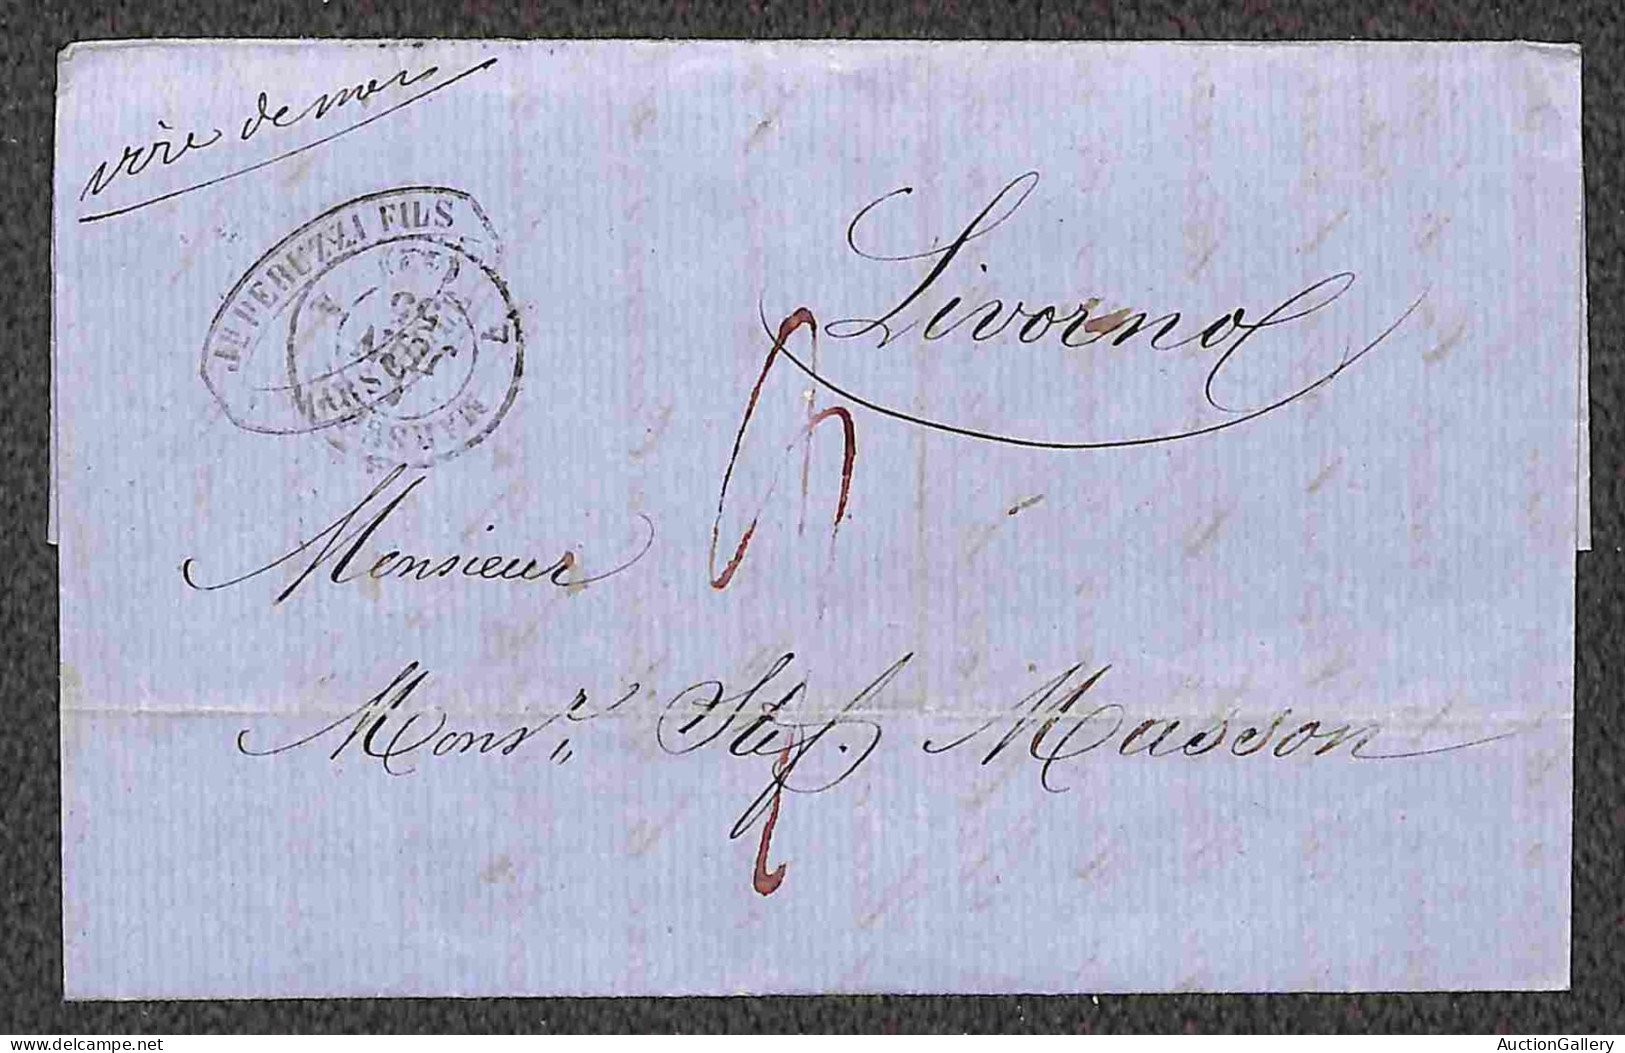 Gran Bretagna - Prefilateliche - Due lettere da Birminghan (1848 - 1856) e da Marsiglia (1855) per Livorno - non affranc